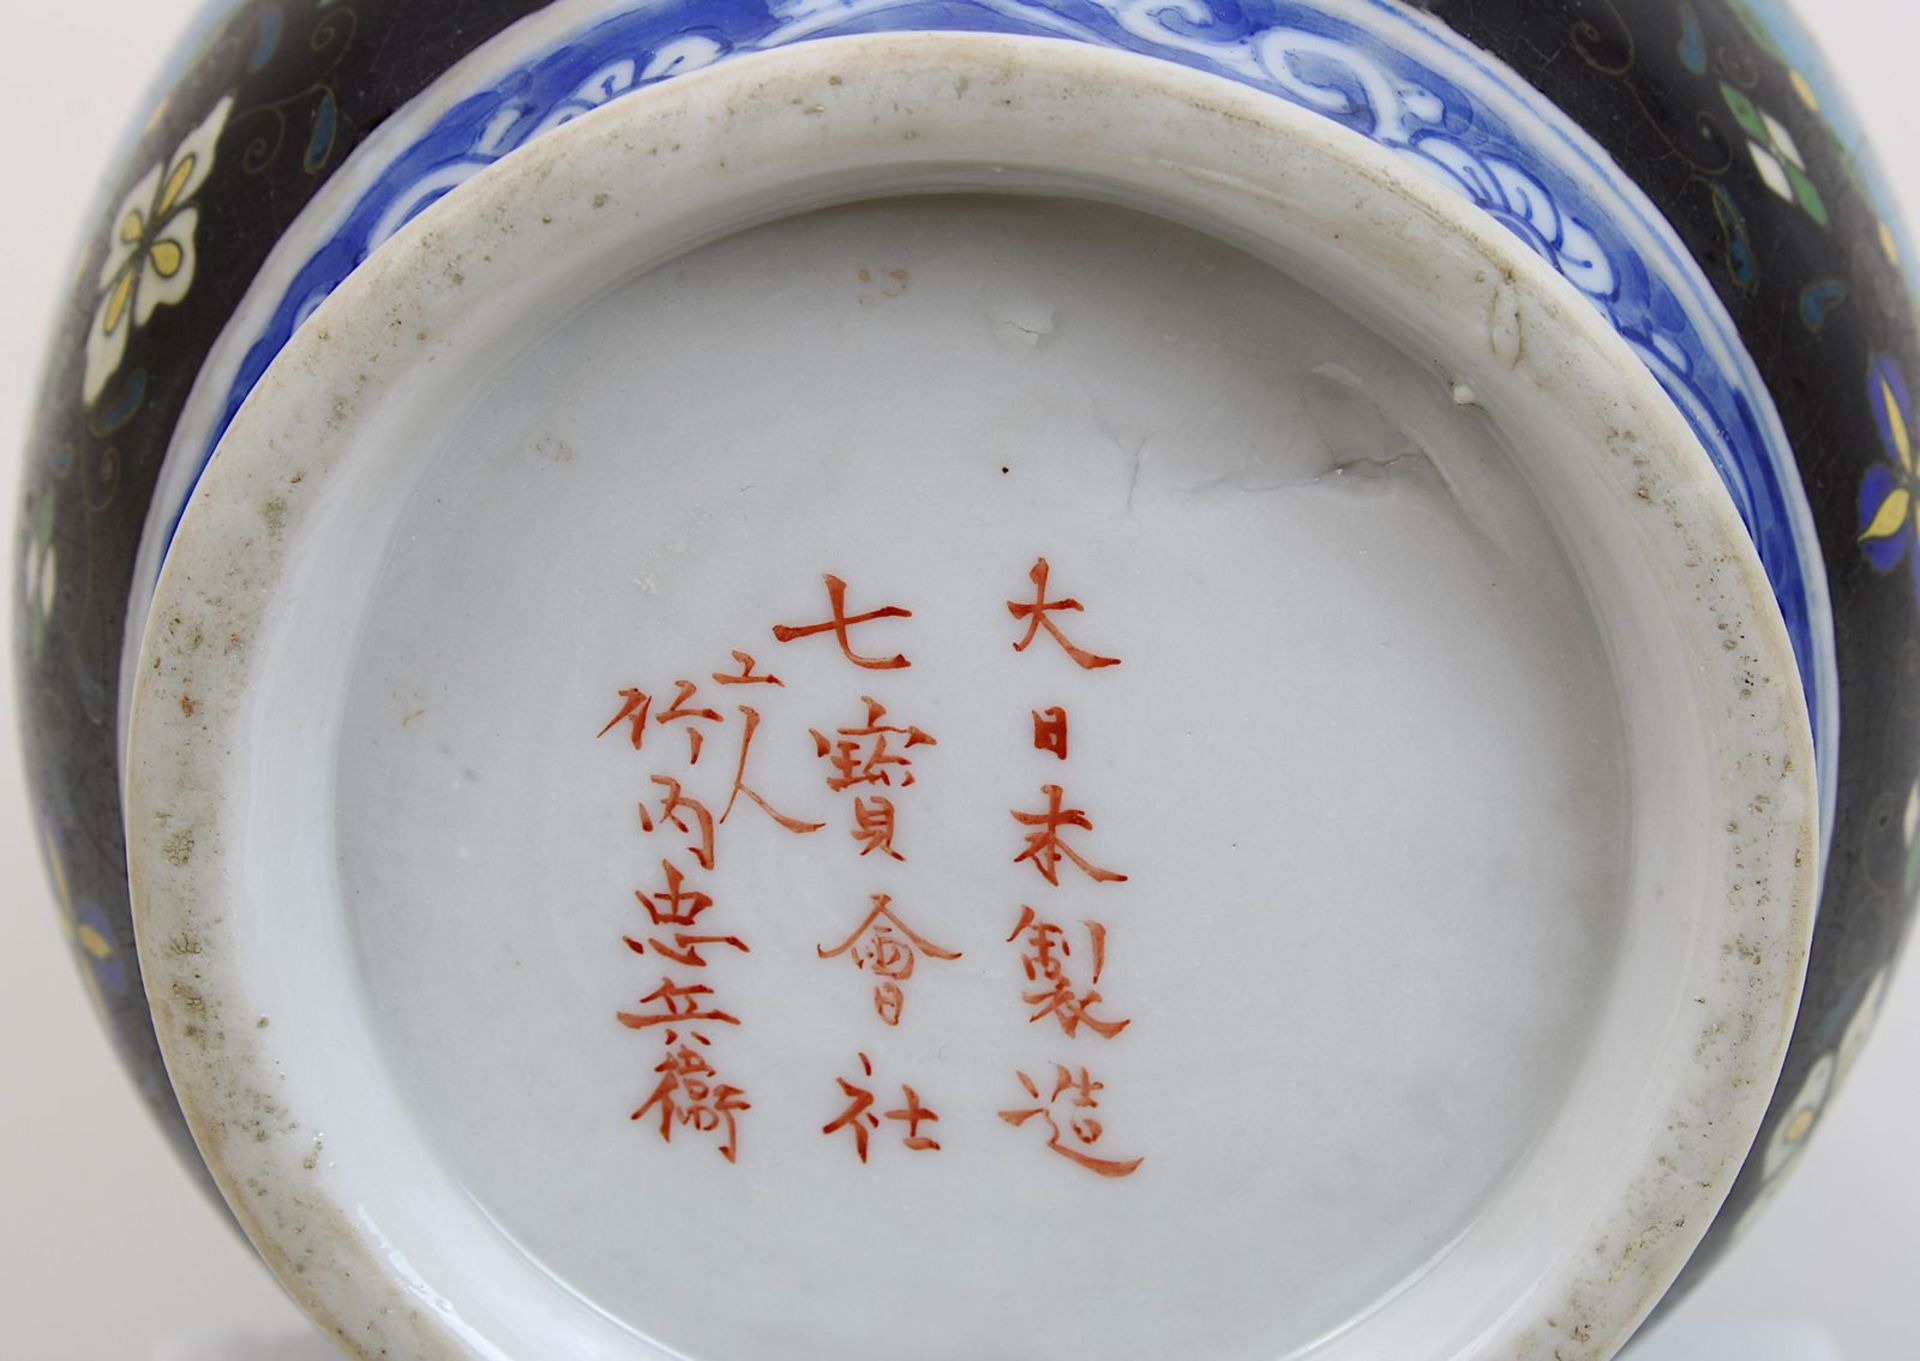 Chinesische Porzellanvase mit Cloisonnéwandung, China 19. Jh., Porzellan weißer Scherben, glasiert - Bild 3 aus 3